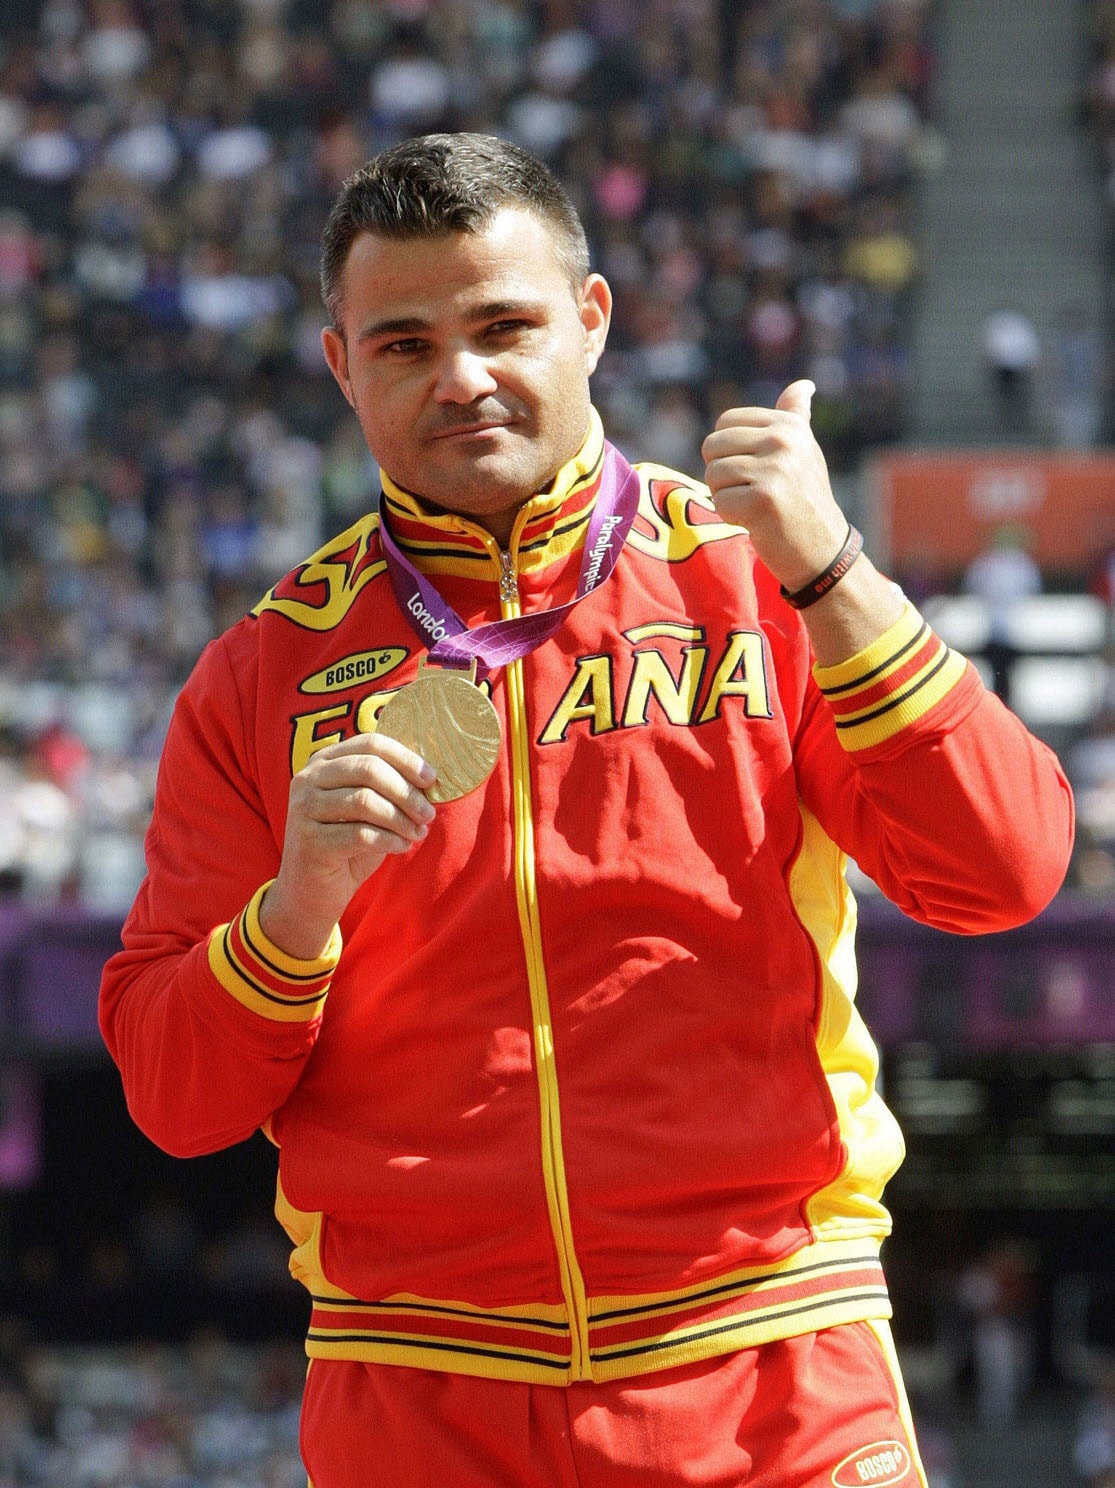 David Casinos, tras recibir la medalla de oro conseguida en la prueba de lanzamiento de disco de los Juegos Paralímpicos de Londres 2012.